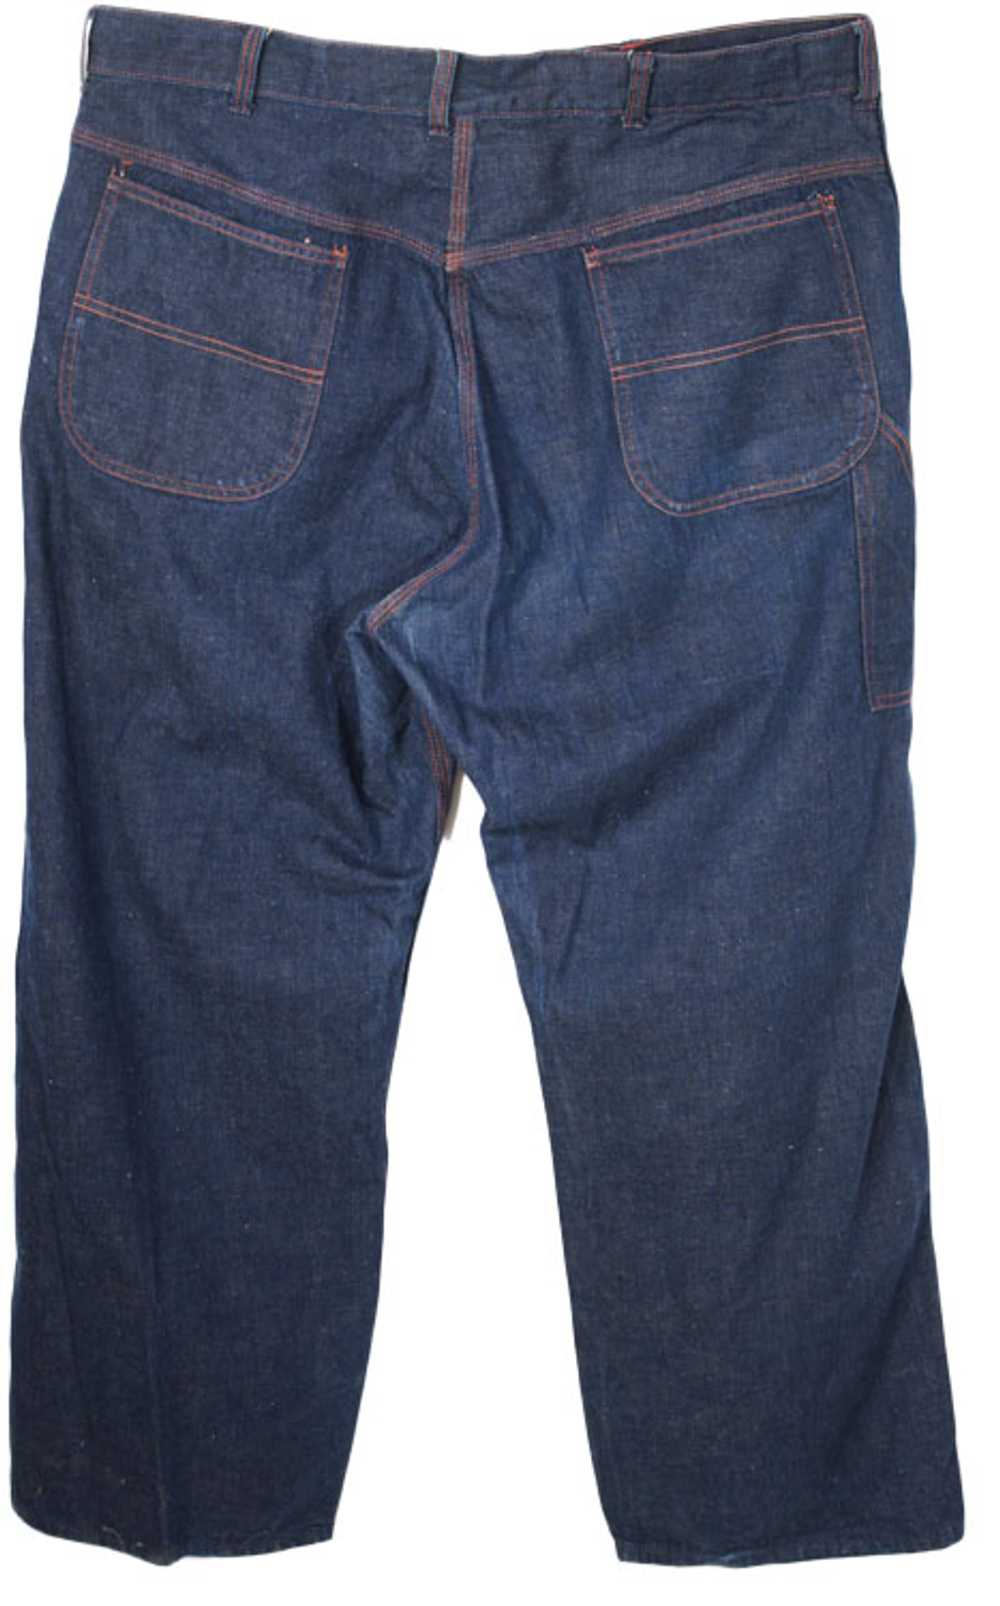 1950s Blue Jeans - image 2